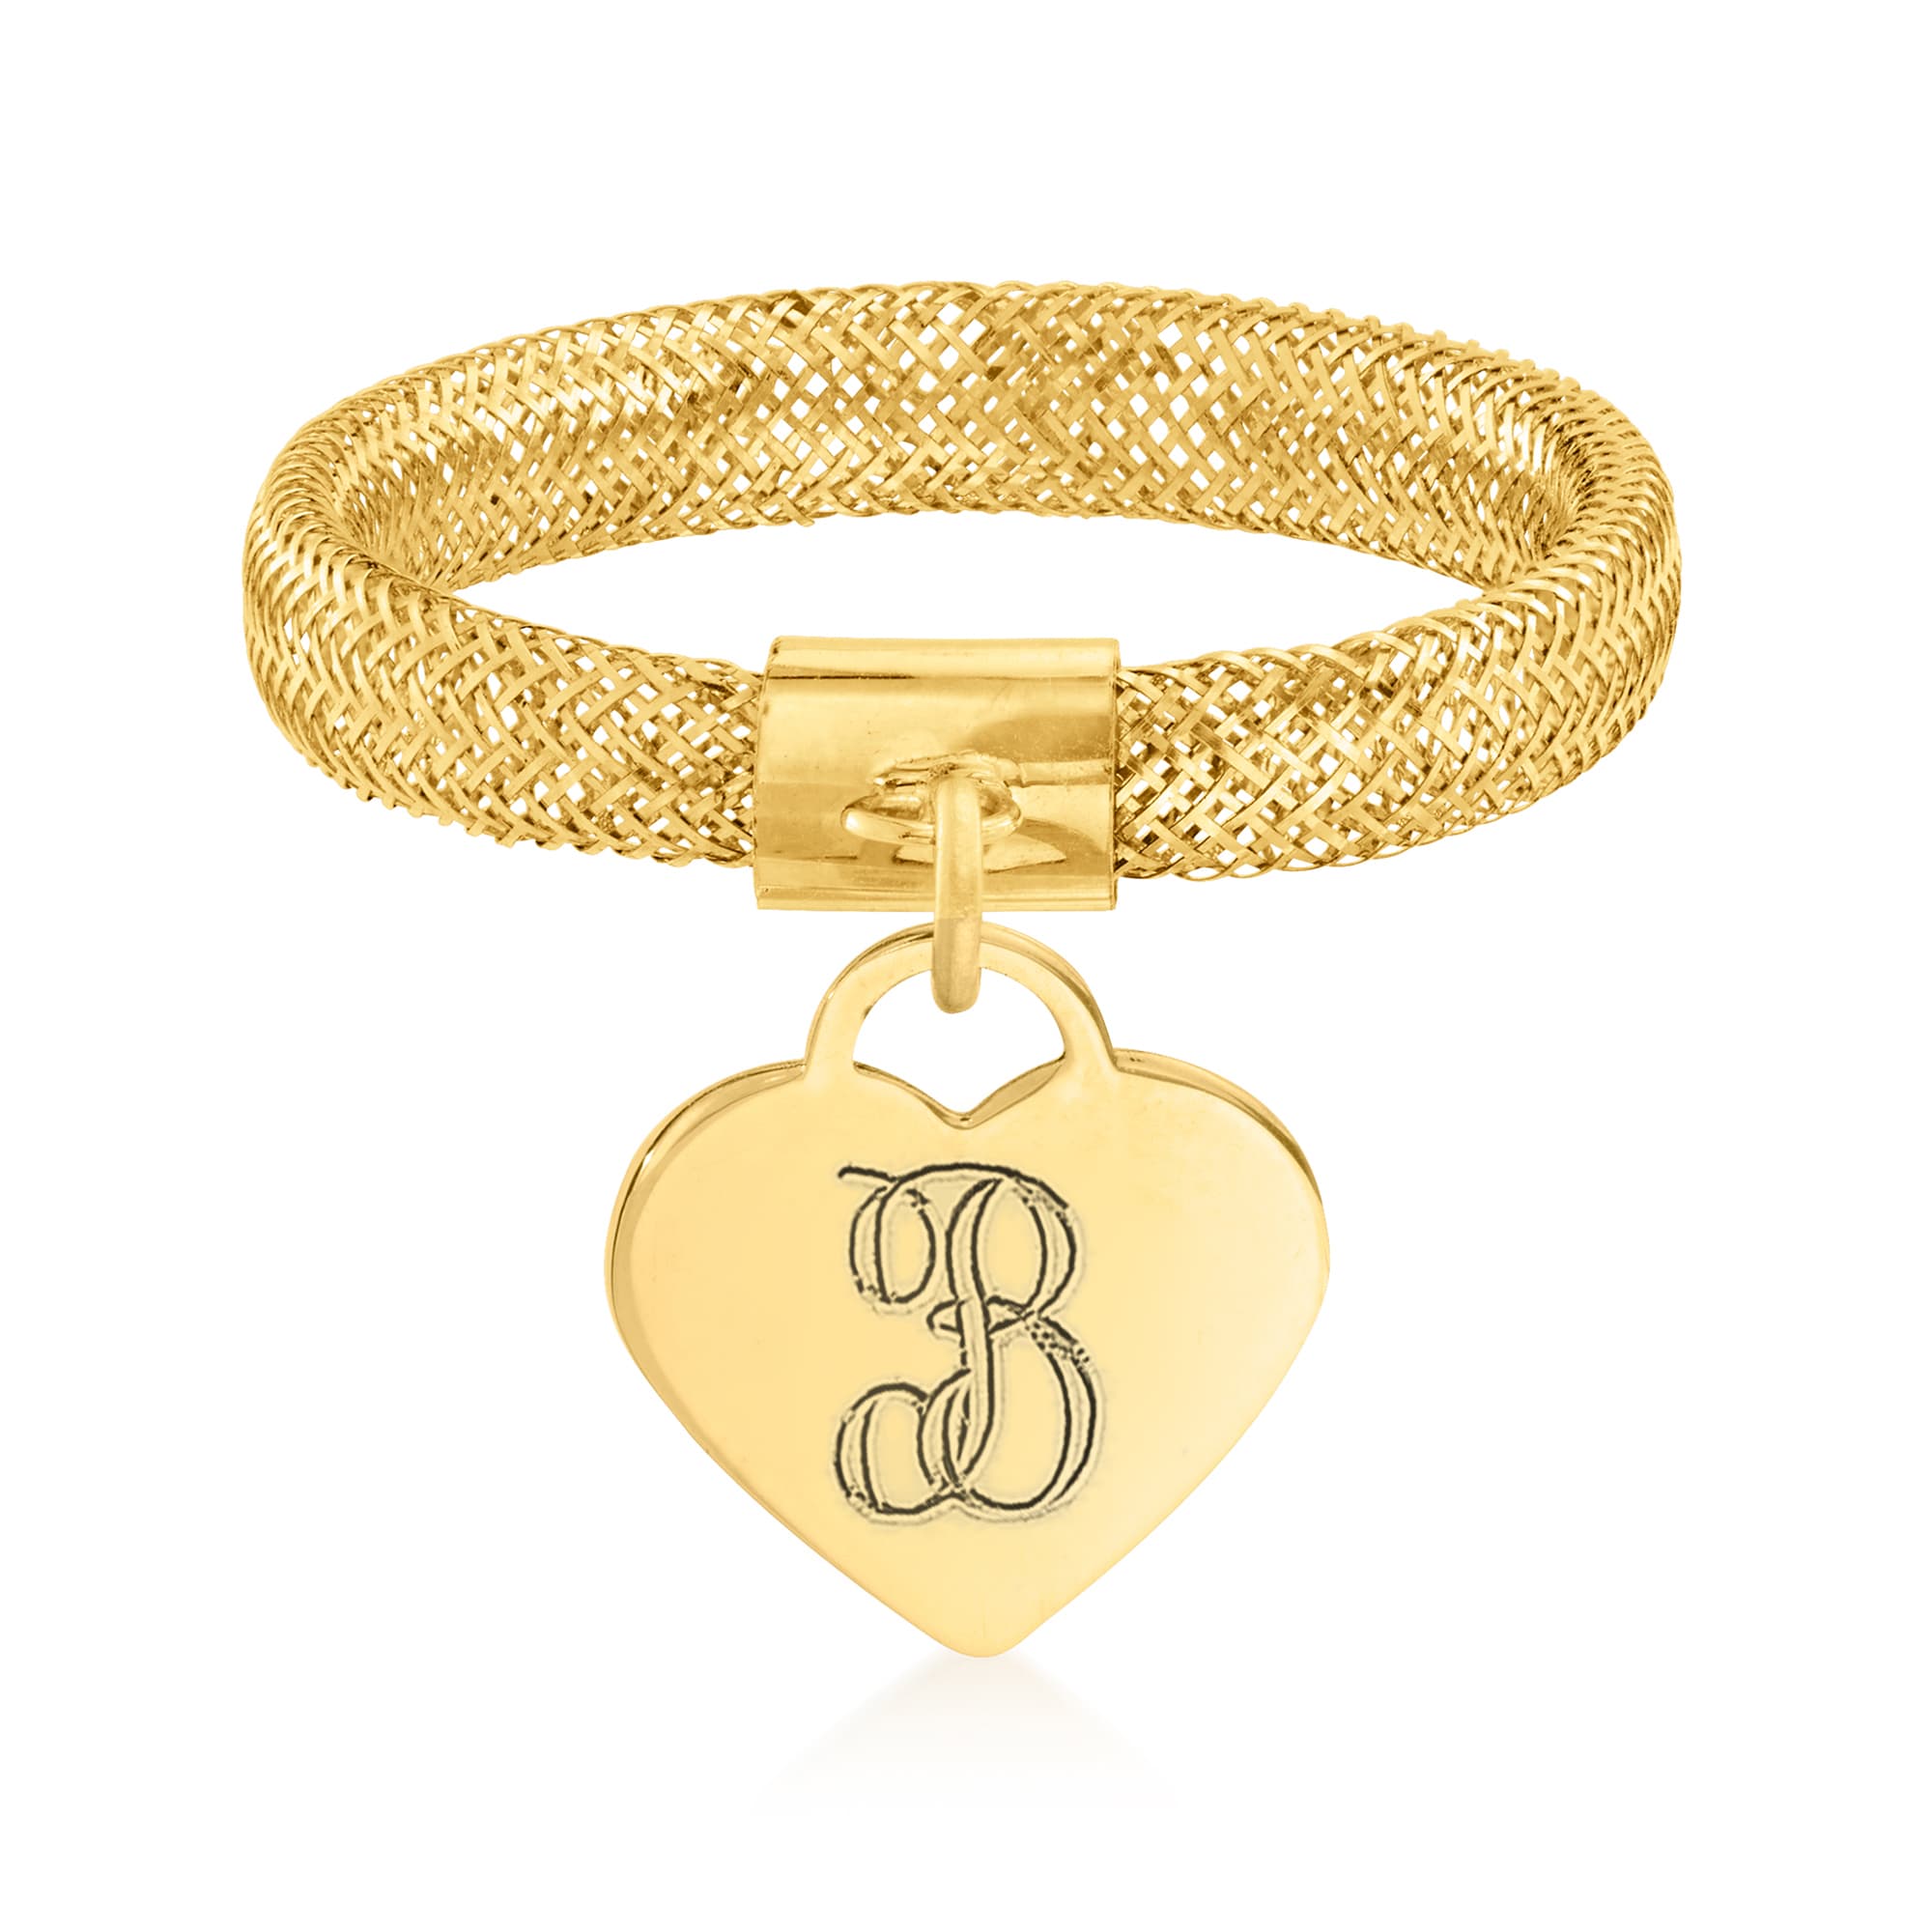 Ross-Simons - Single Initial Italian 14kt Yellow Gold Heart Charm Bracelet. 8